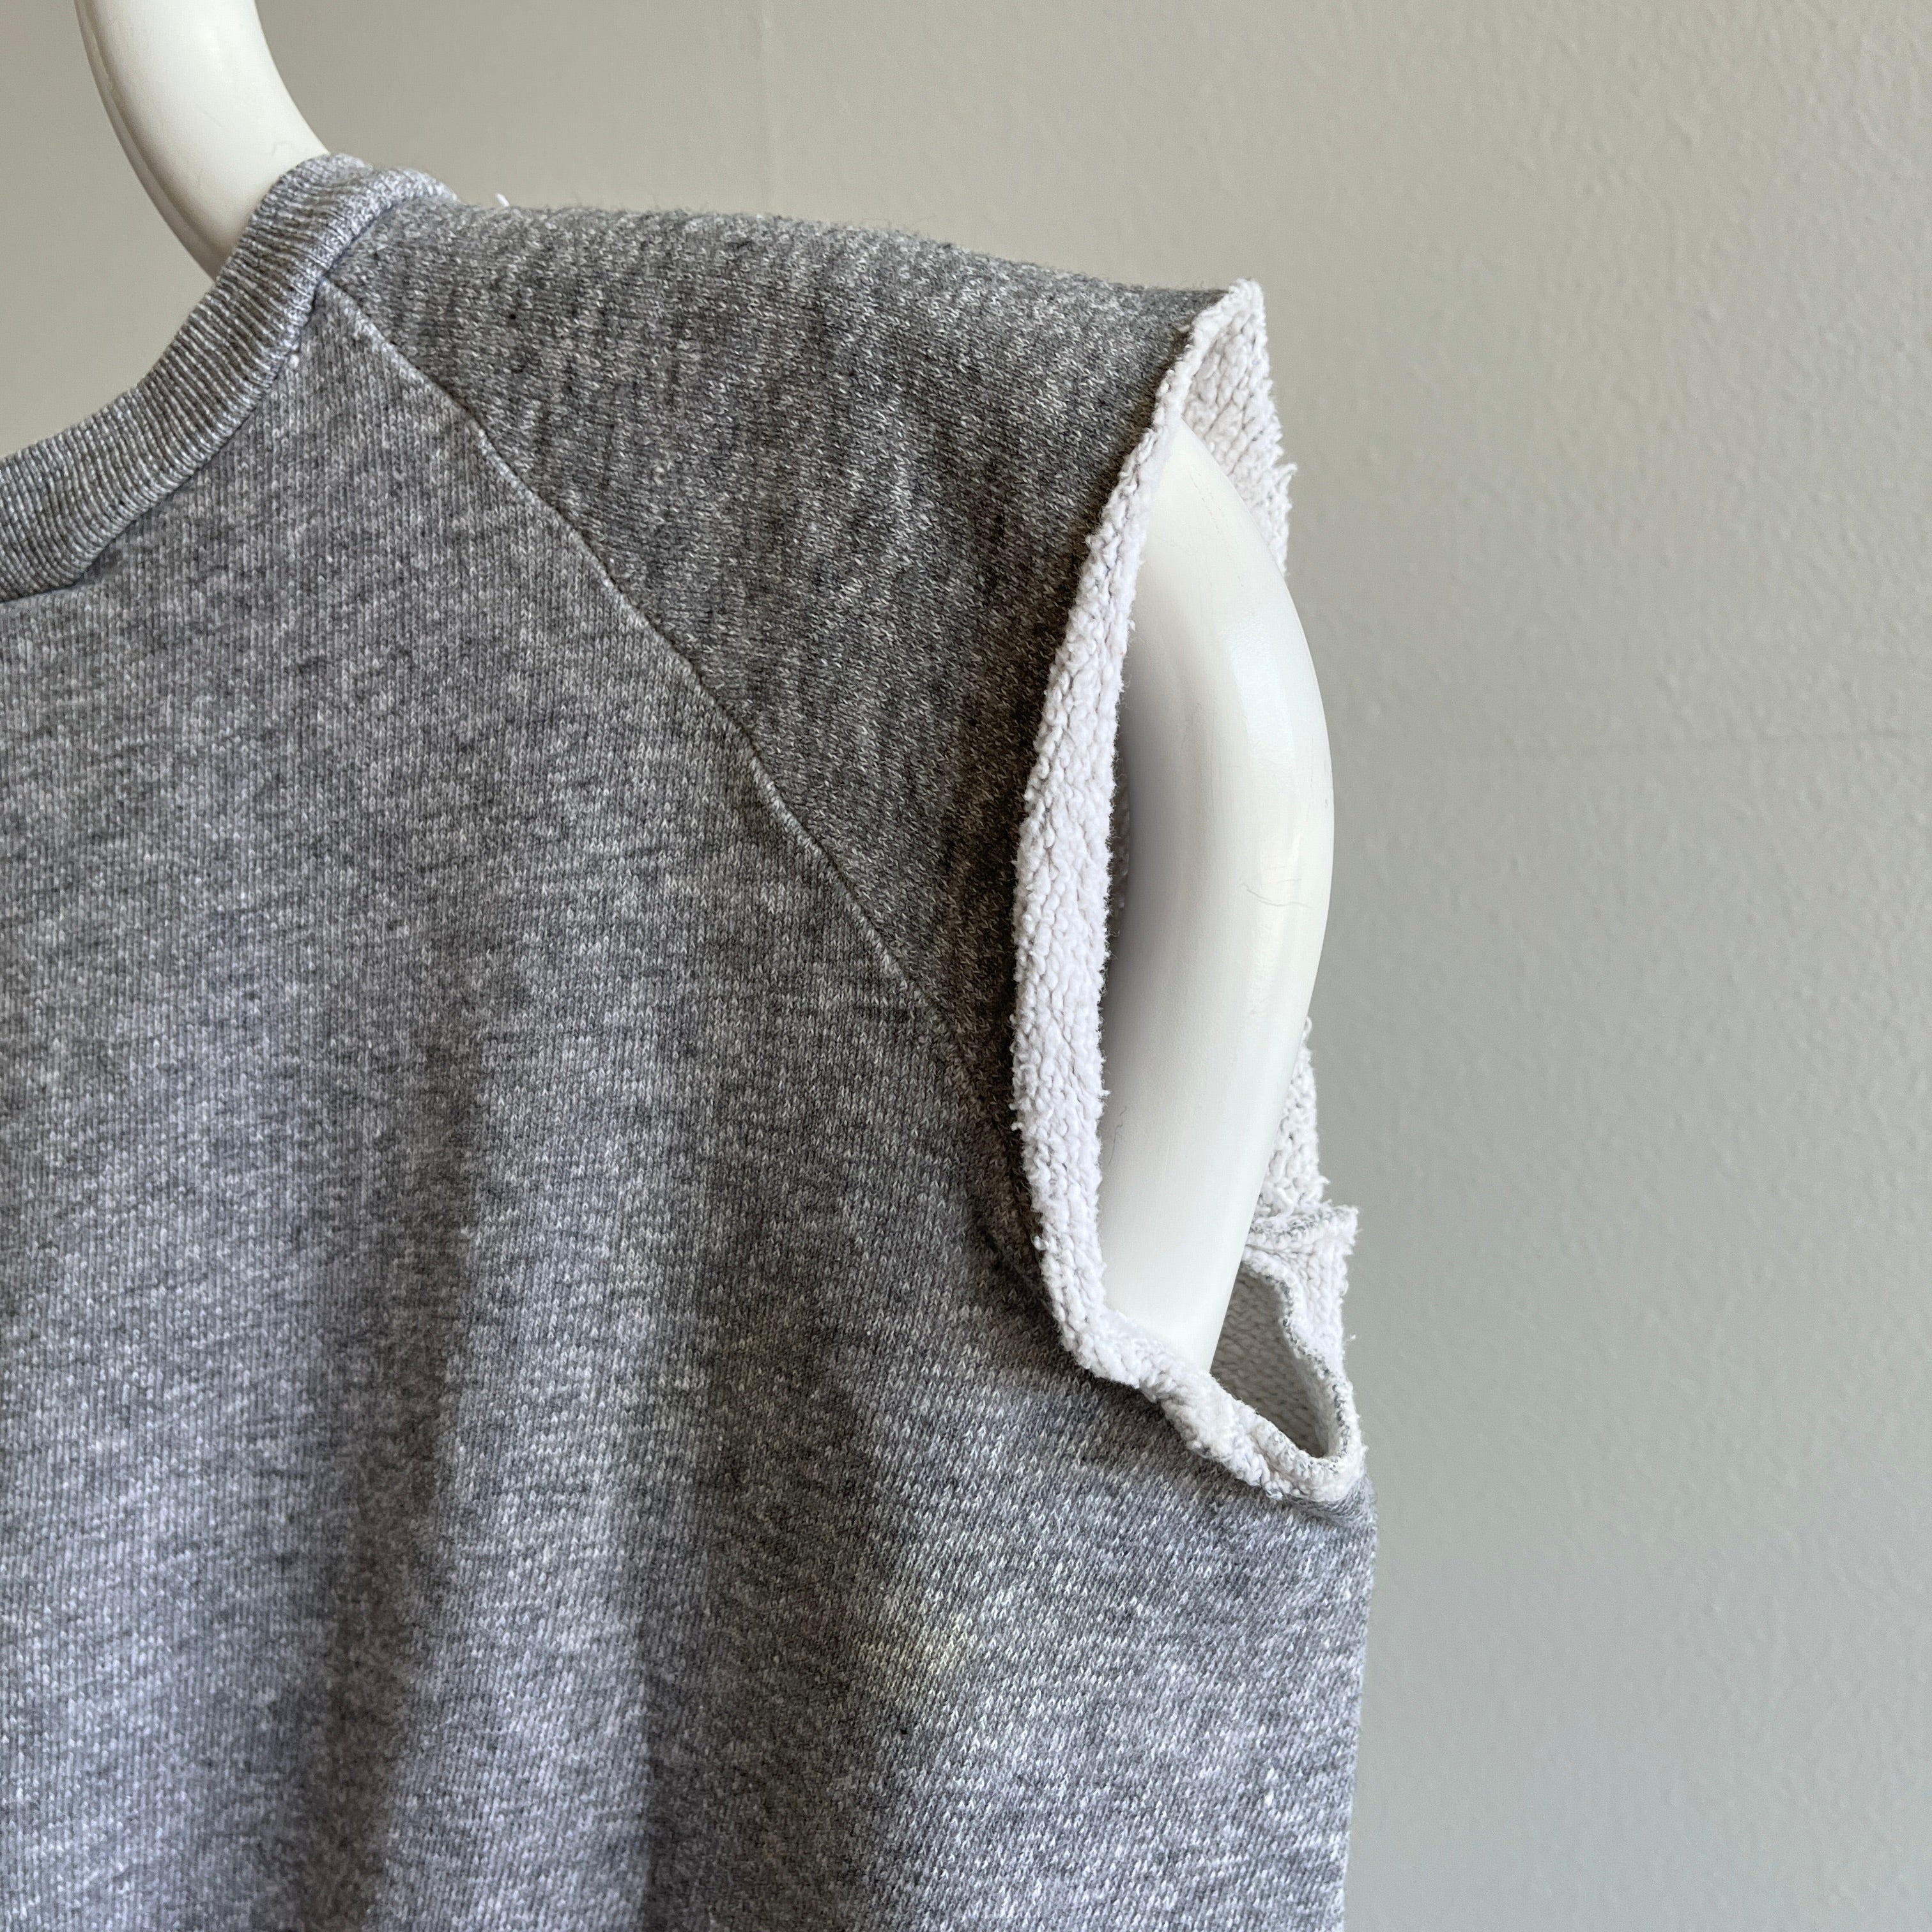 Sweat-shirt musculaire bricolage des années 1970 sur un sweat-shirt gris blanc principalement en coton mélangé - BEAT UP